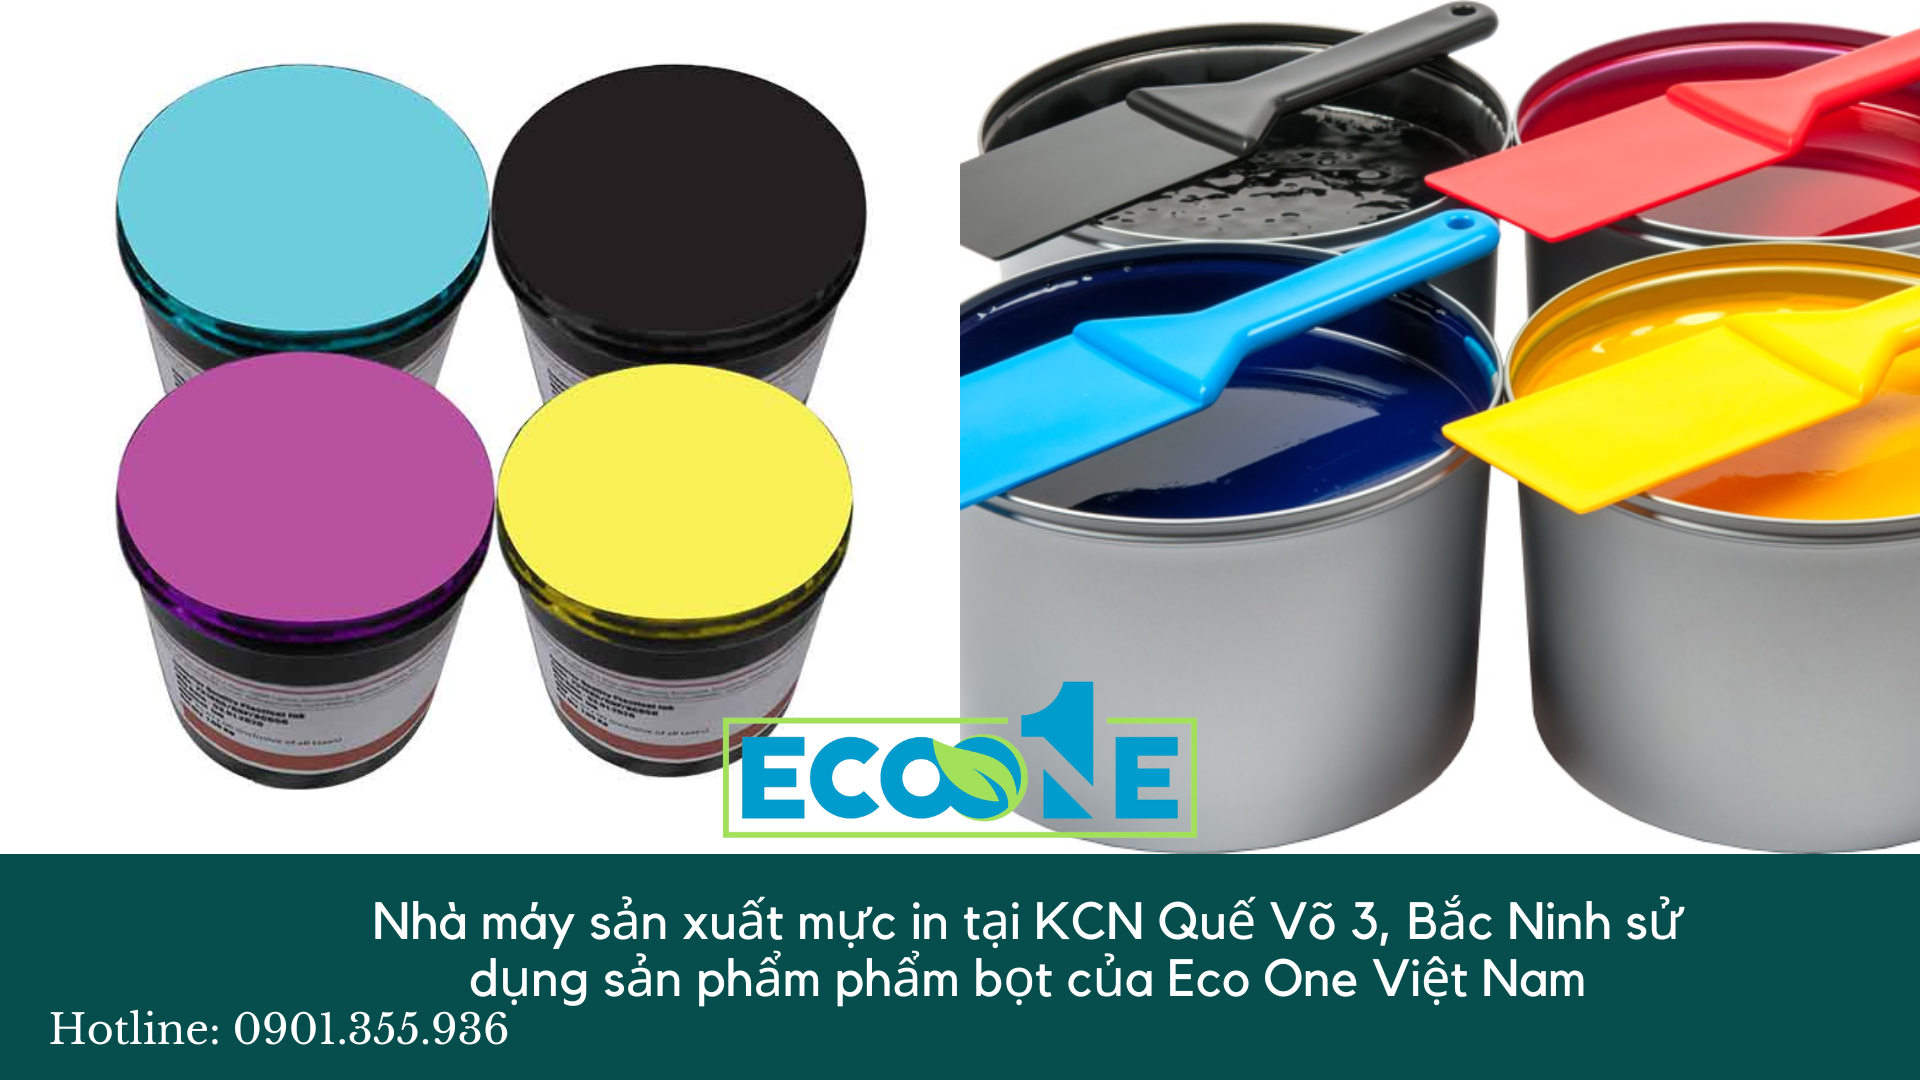 Nhà máy sản xuất mực in tại KCN Quế Võ 3, Bắc Ninh sử dụng sản phẩm phẩm bọt của Eco One Việt Nam